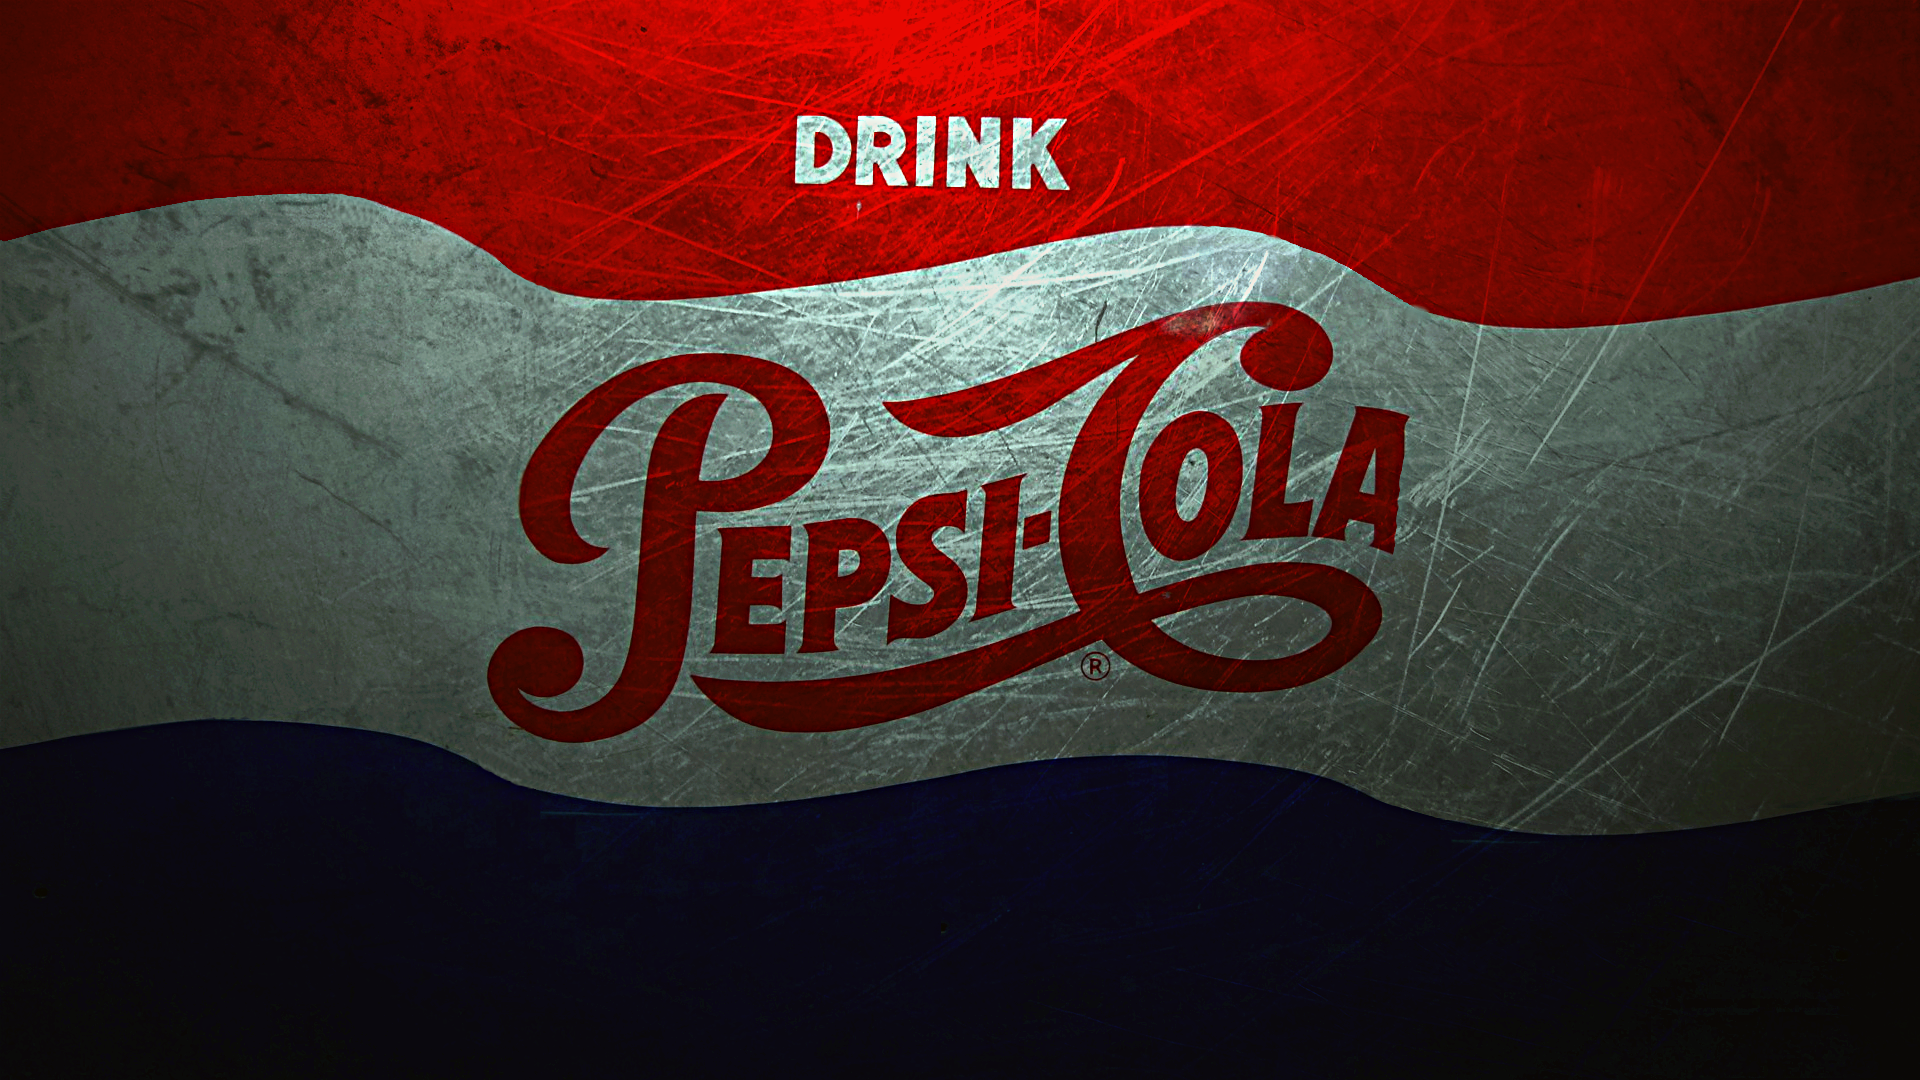 Pepsi Cola Puter Wallpaper Desktop Background Id